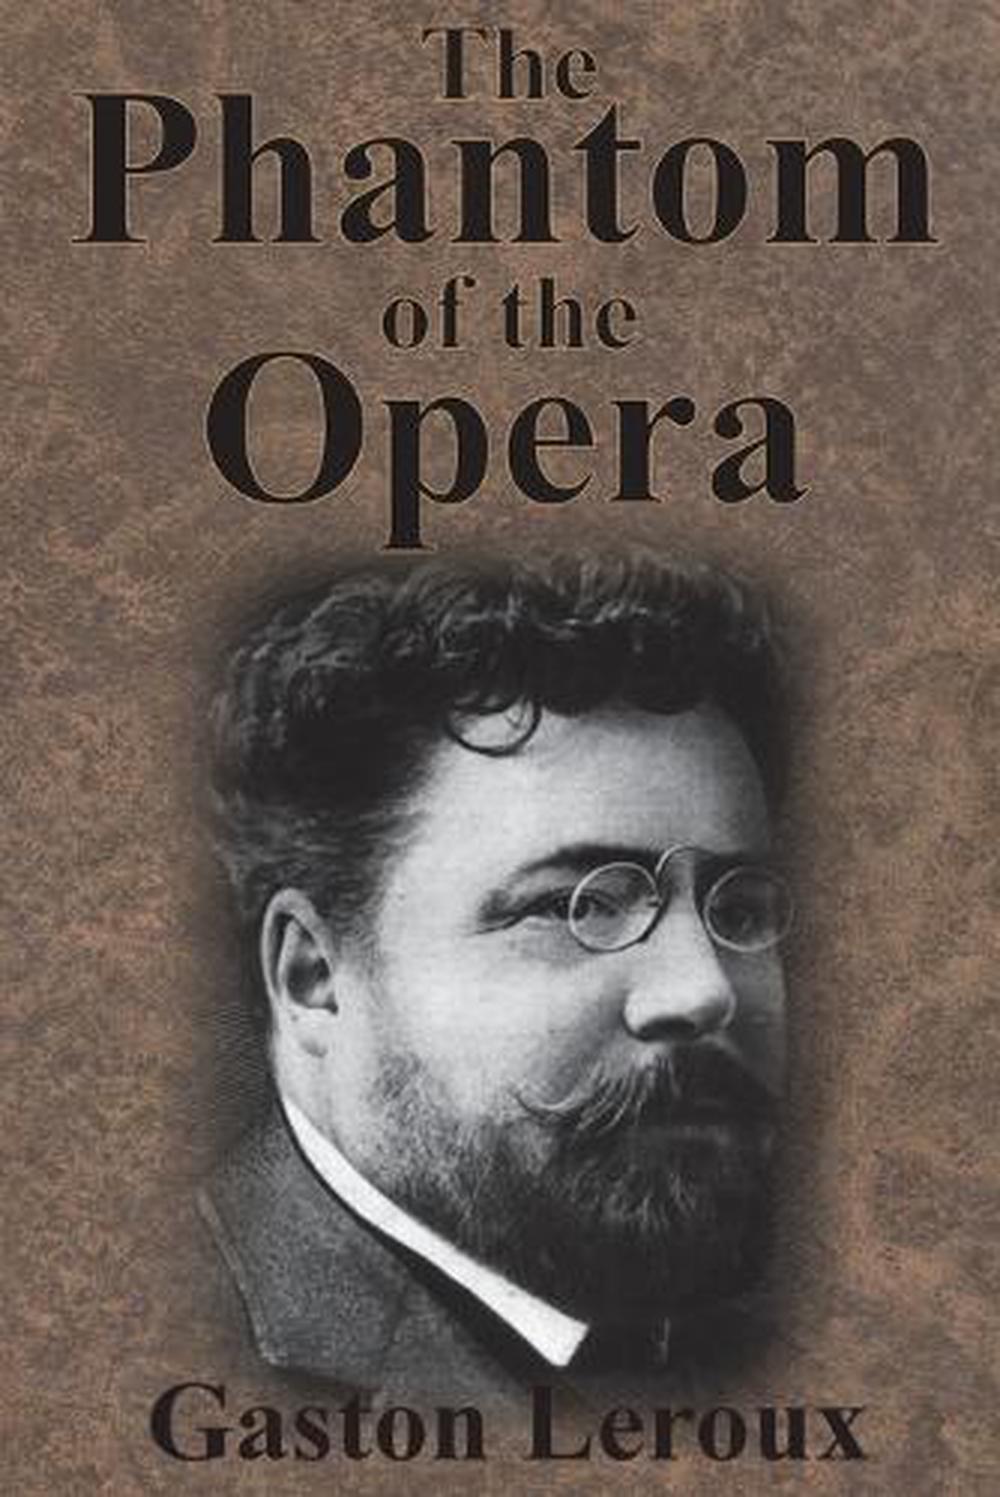 who wrote the phantom of the opera book